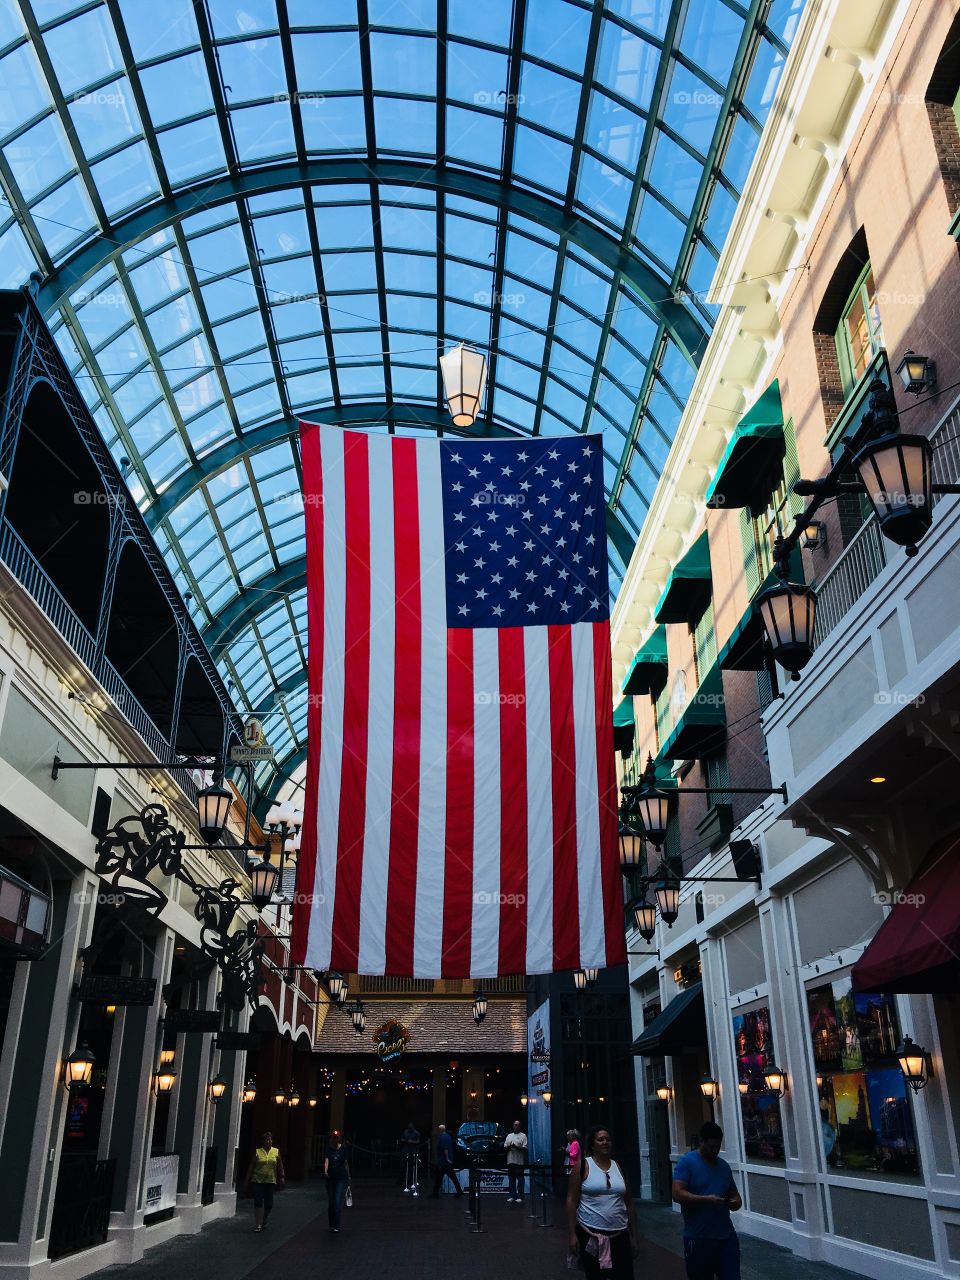 USA flag hanging inside mall